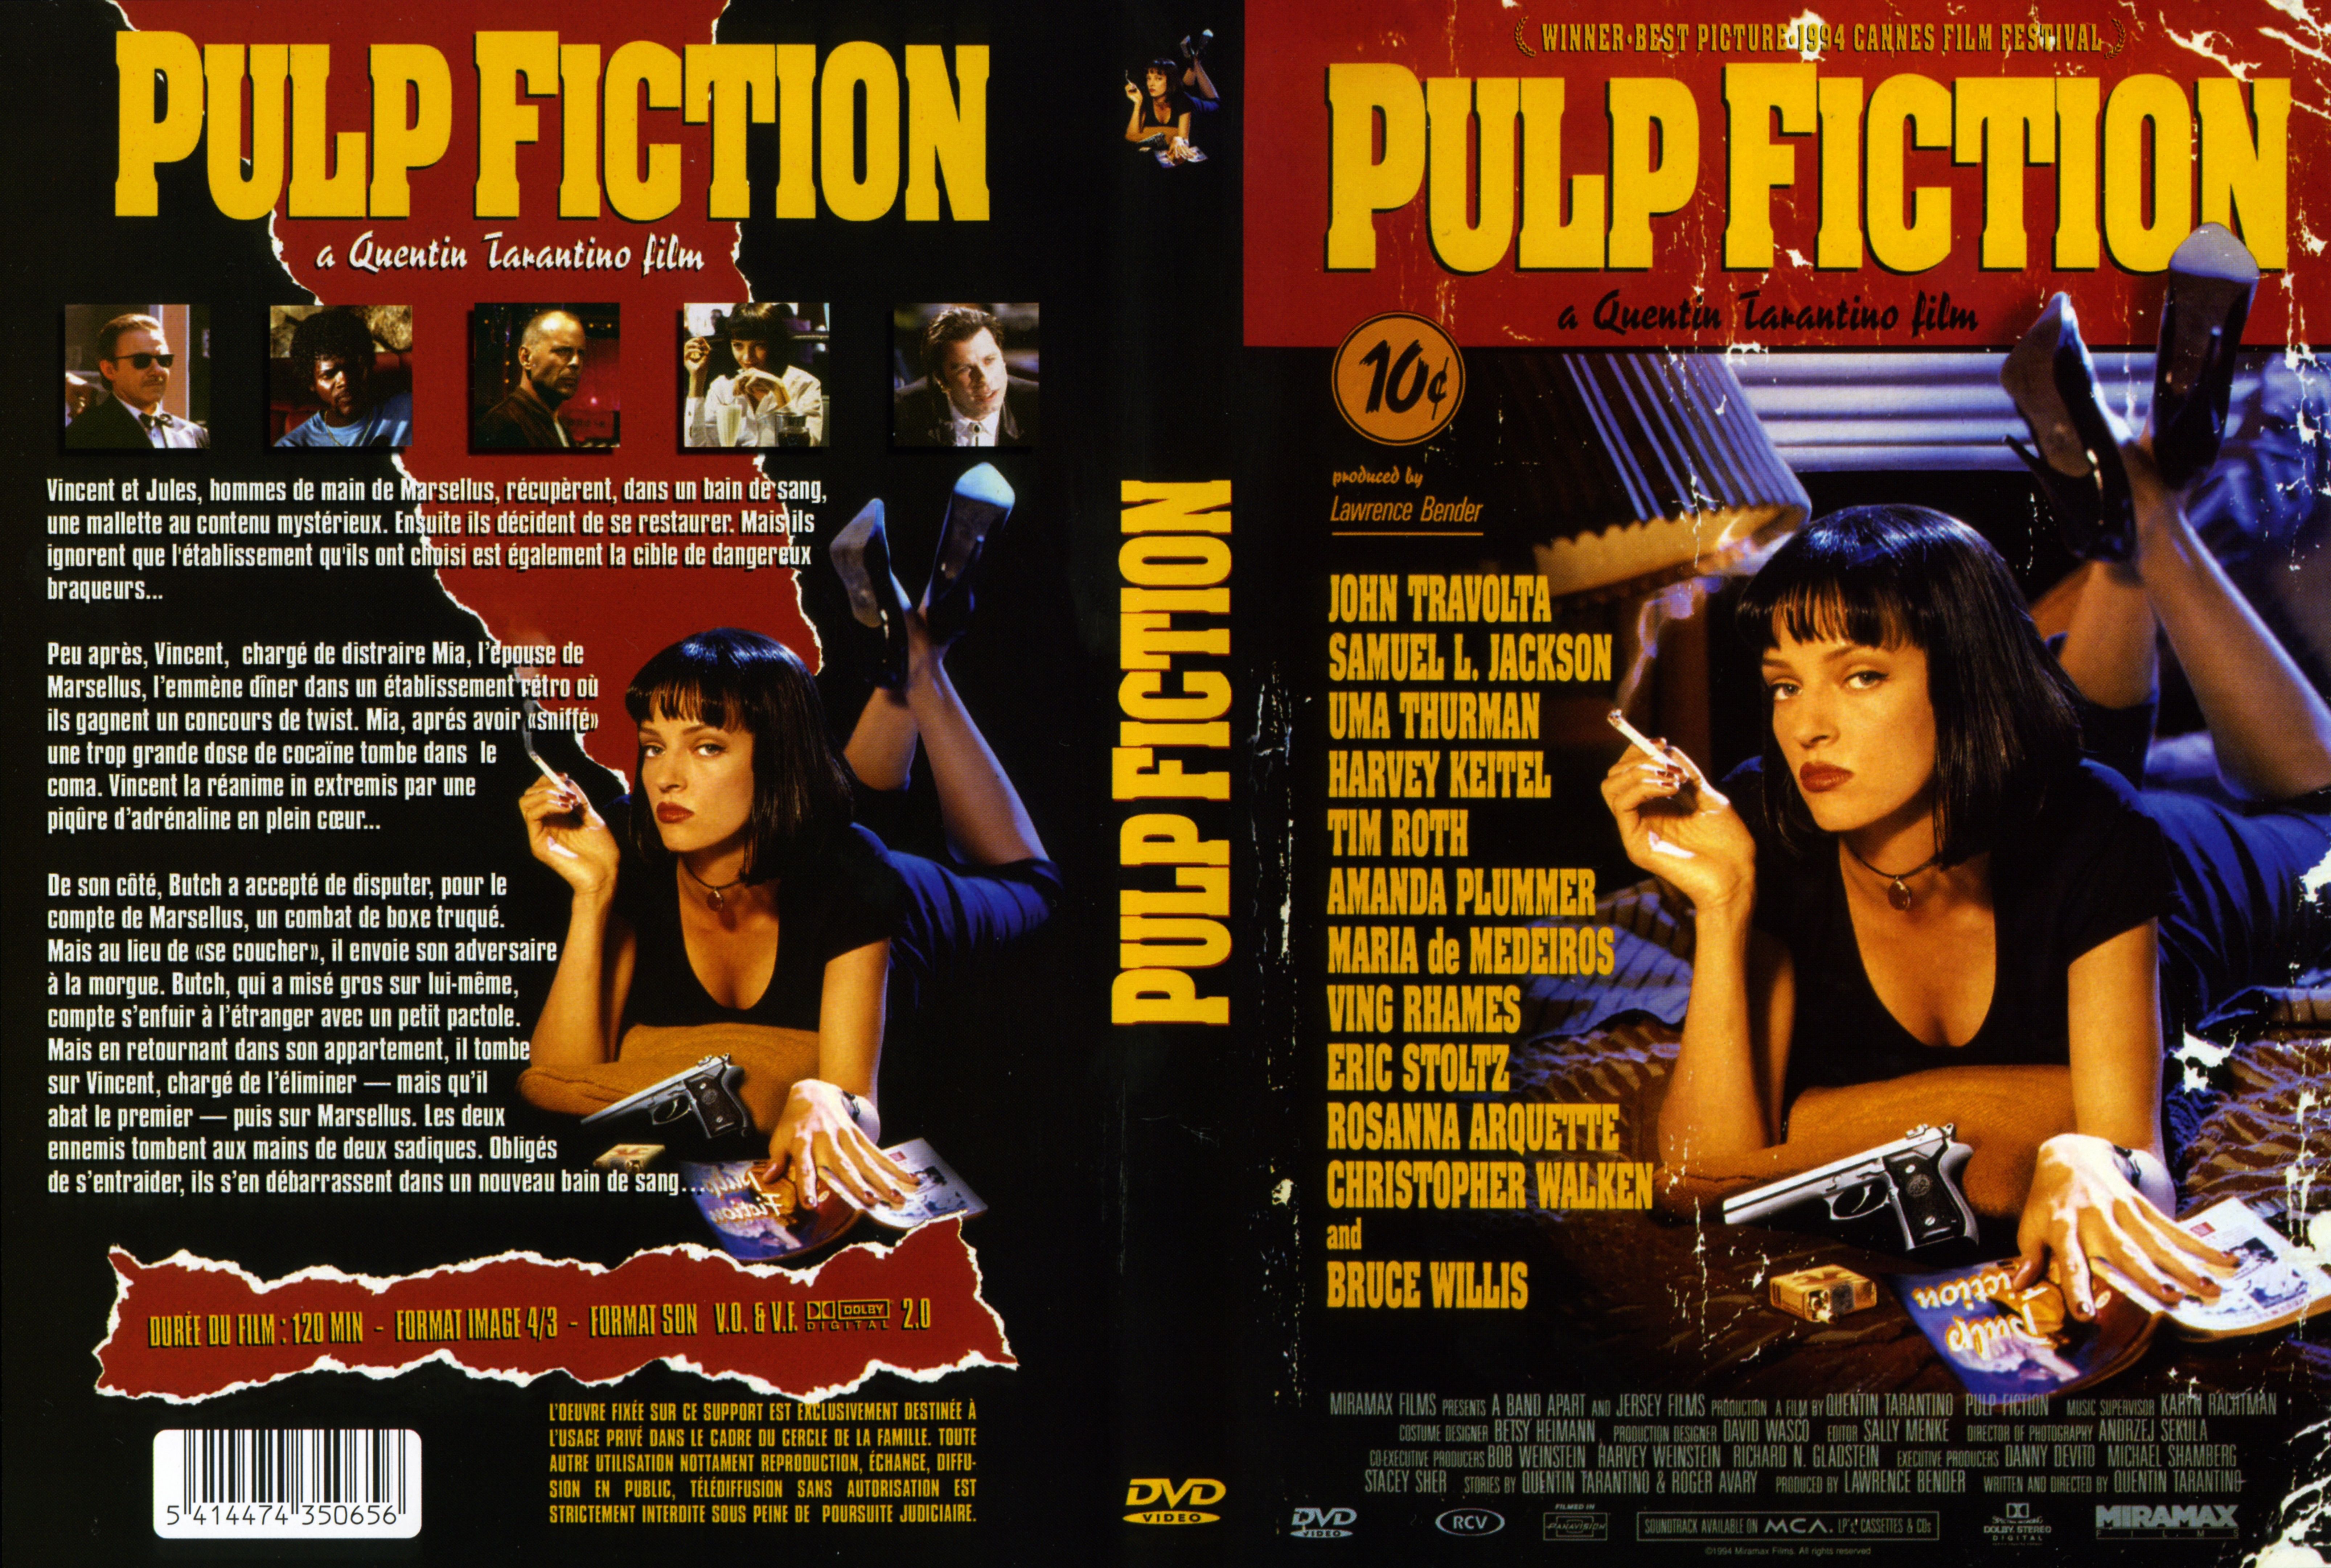 Jaquette DVD Pulp fiction v3